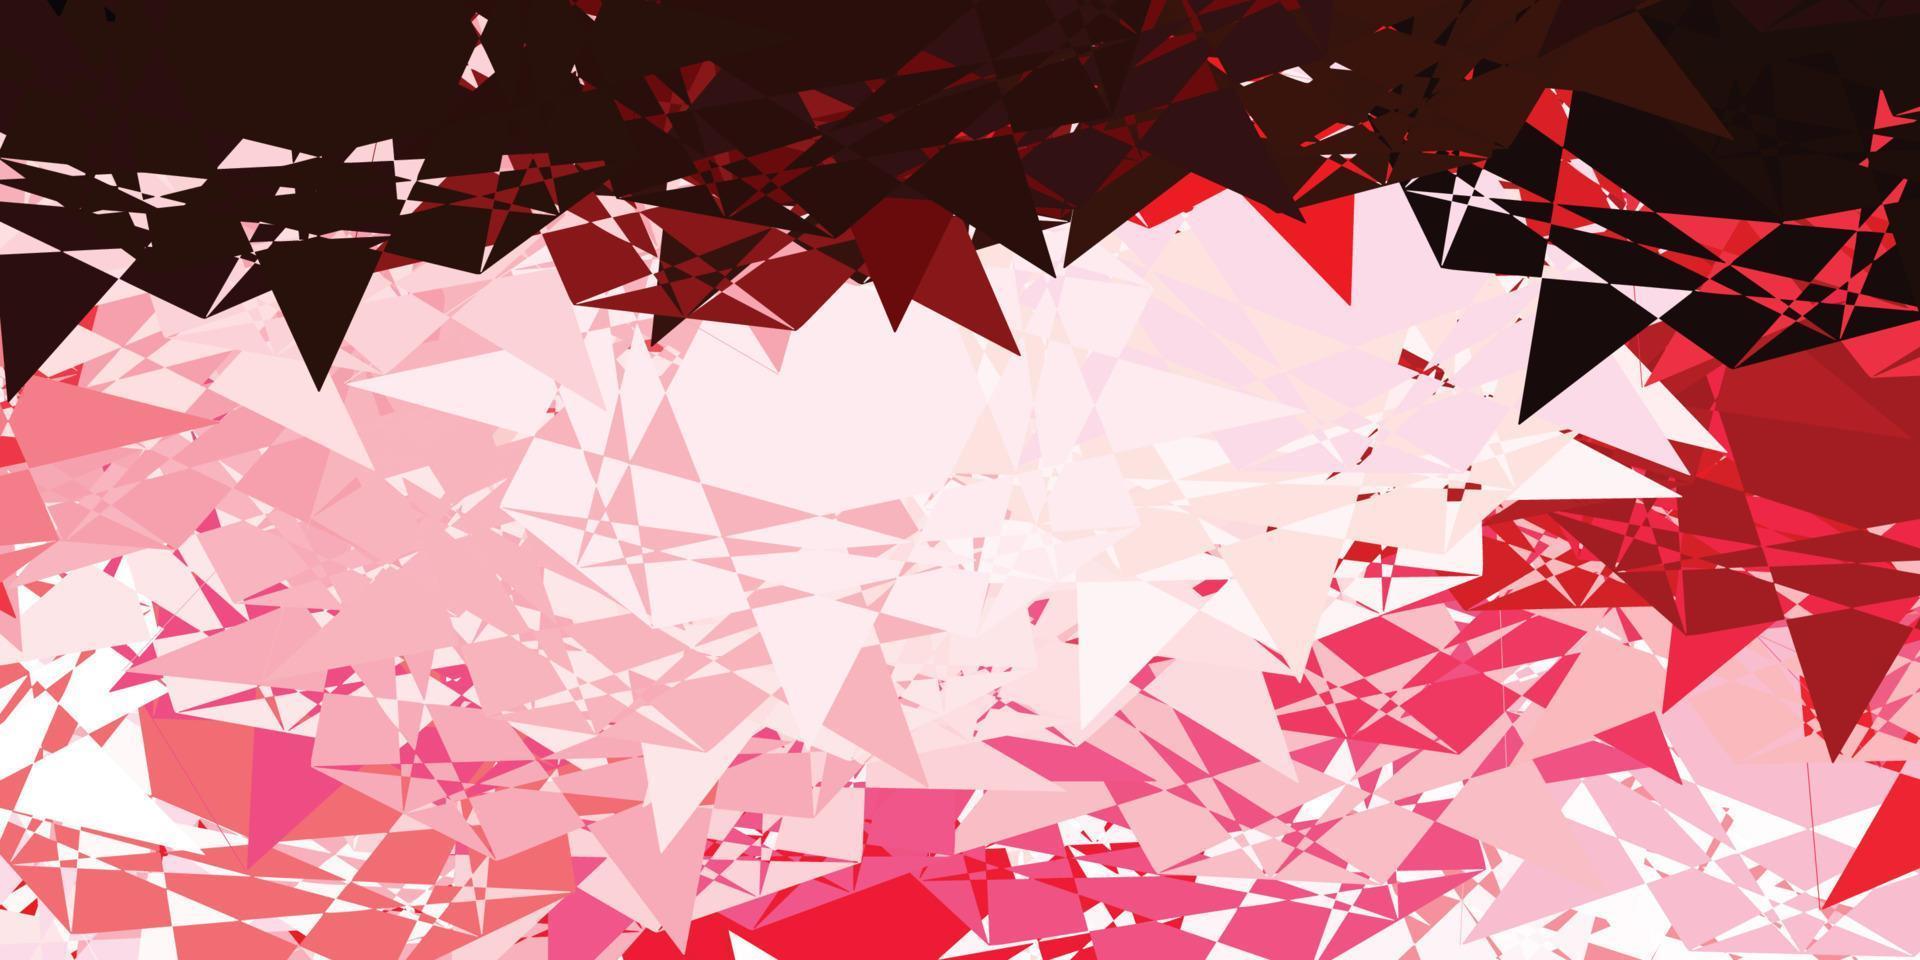 modello vettoriale rosa chiaro, rosso con forme triangolari.